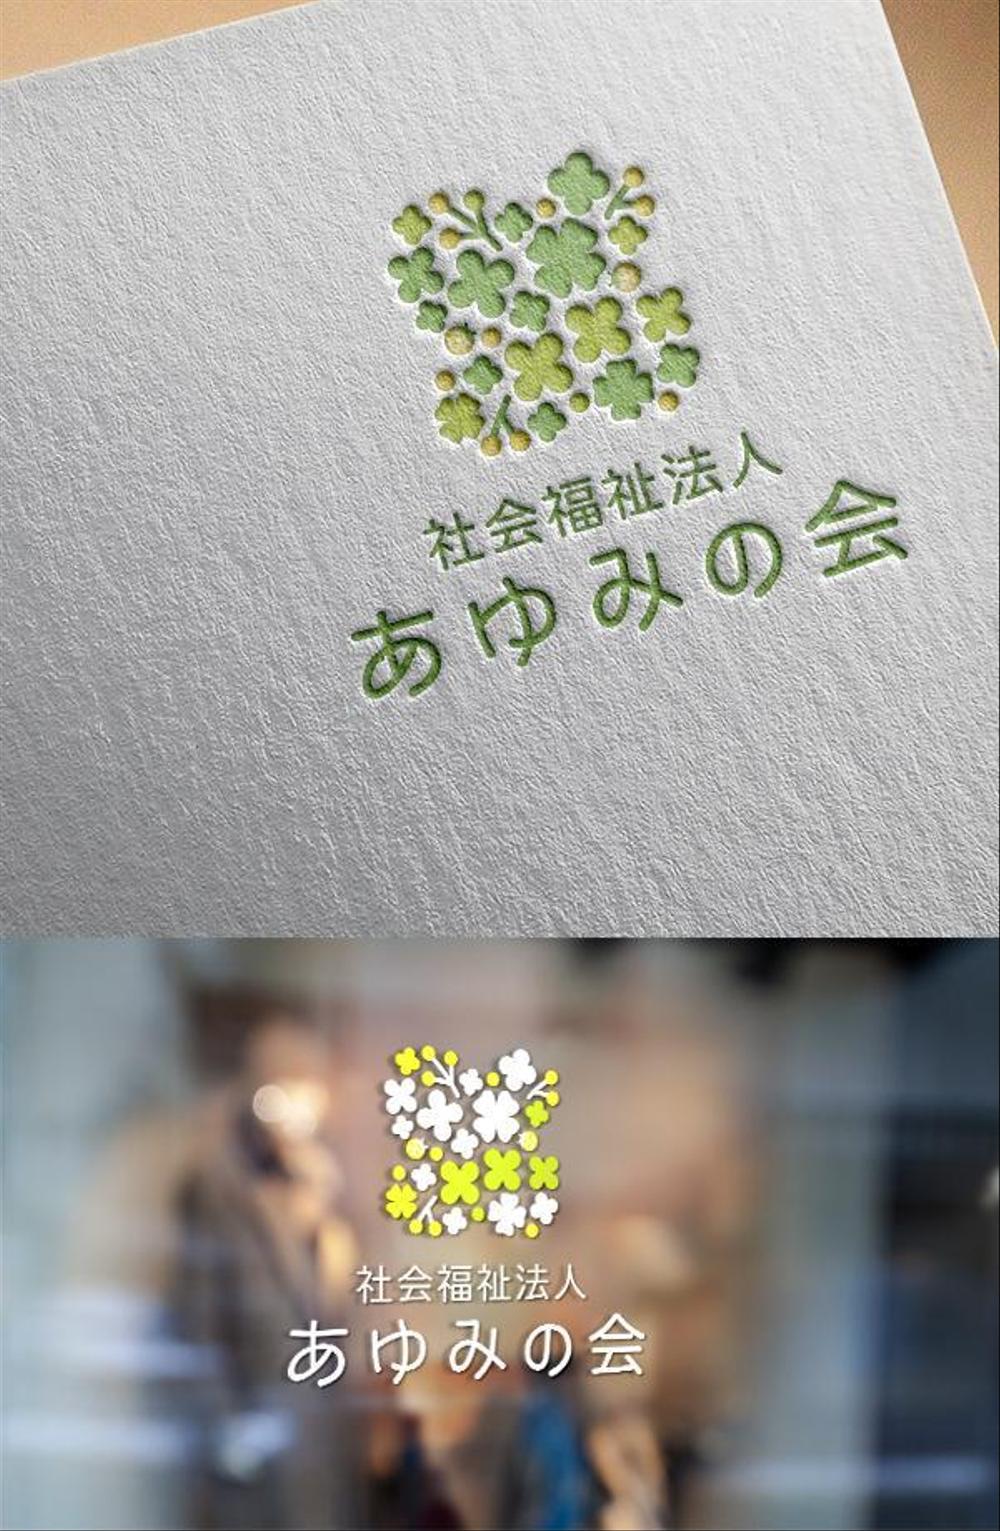 埼玉県の保育園を運営する、社会福祉法人のロゴ作成